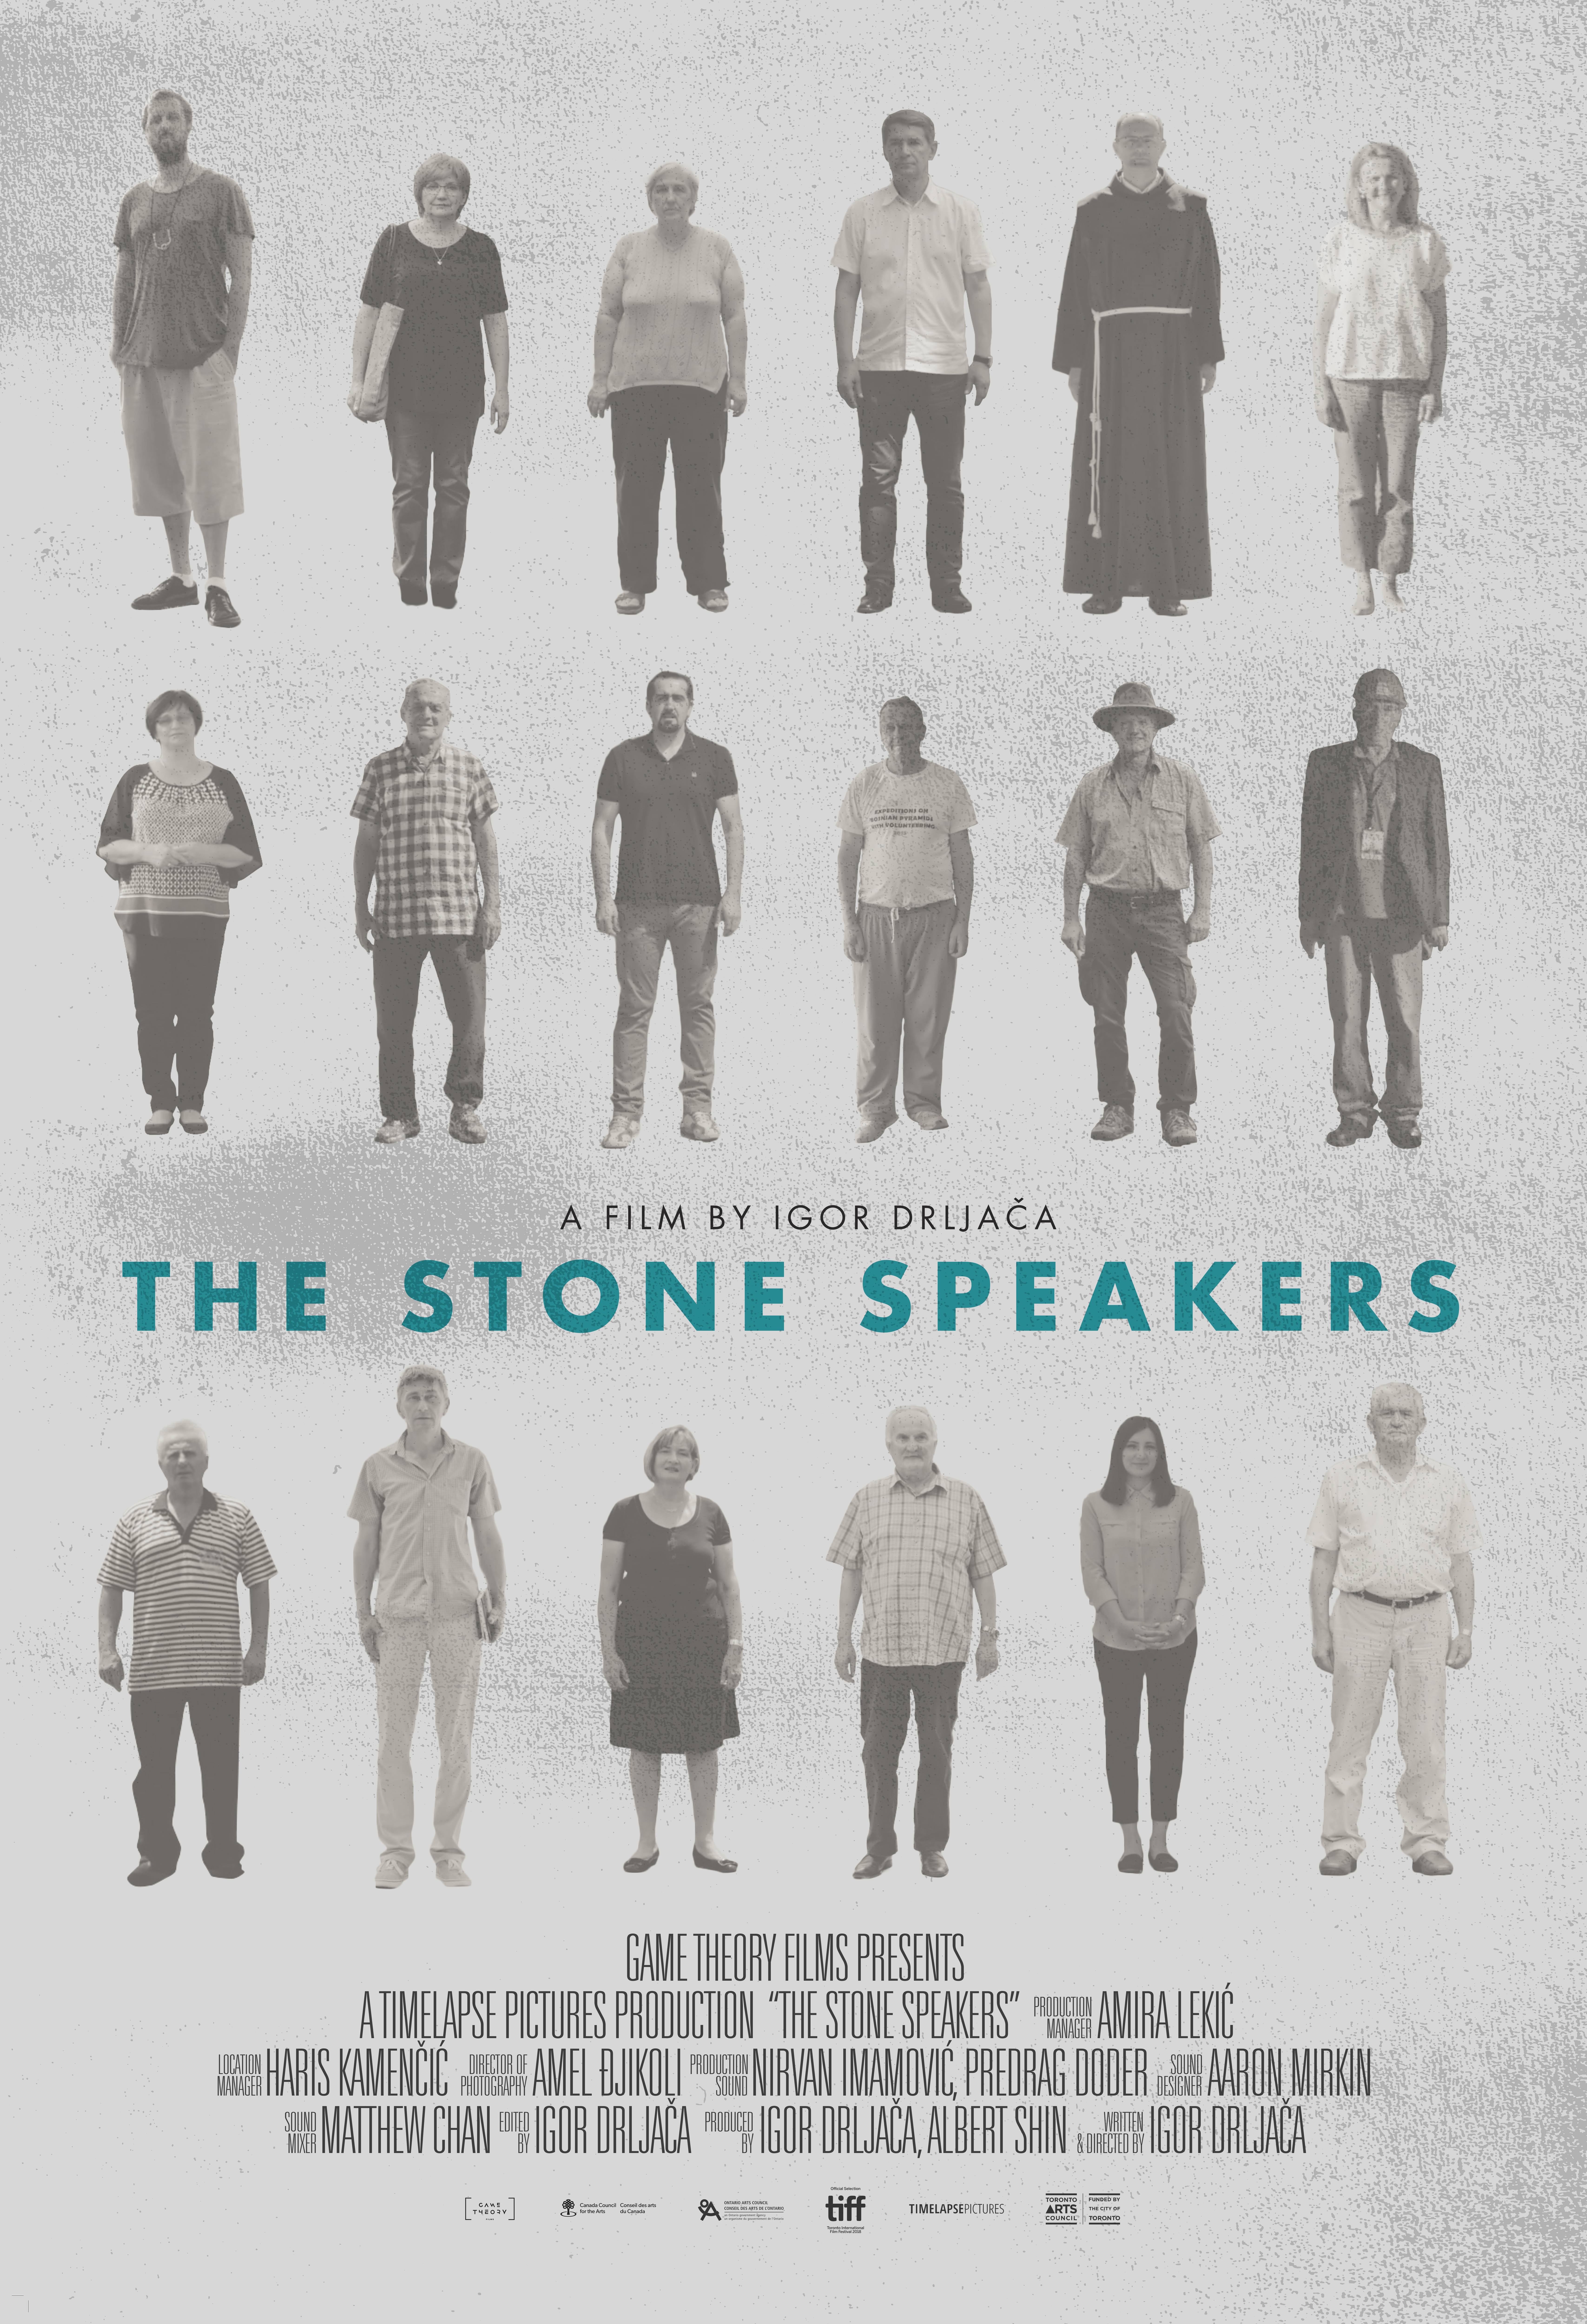 The Stone Speakers